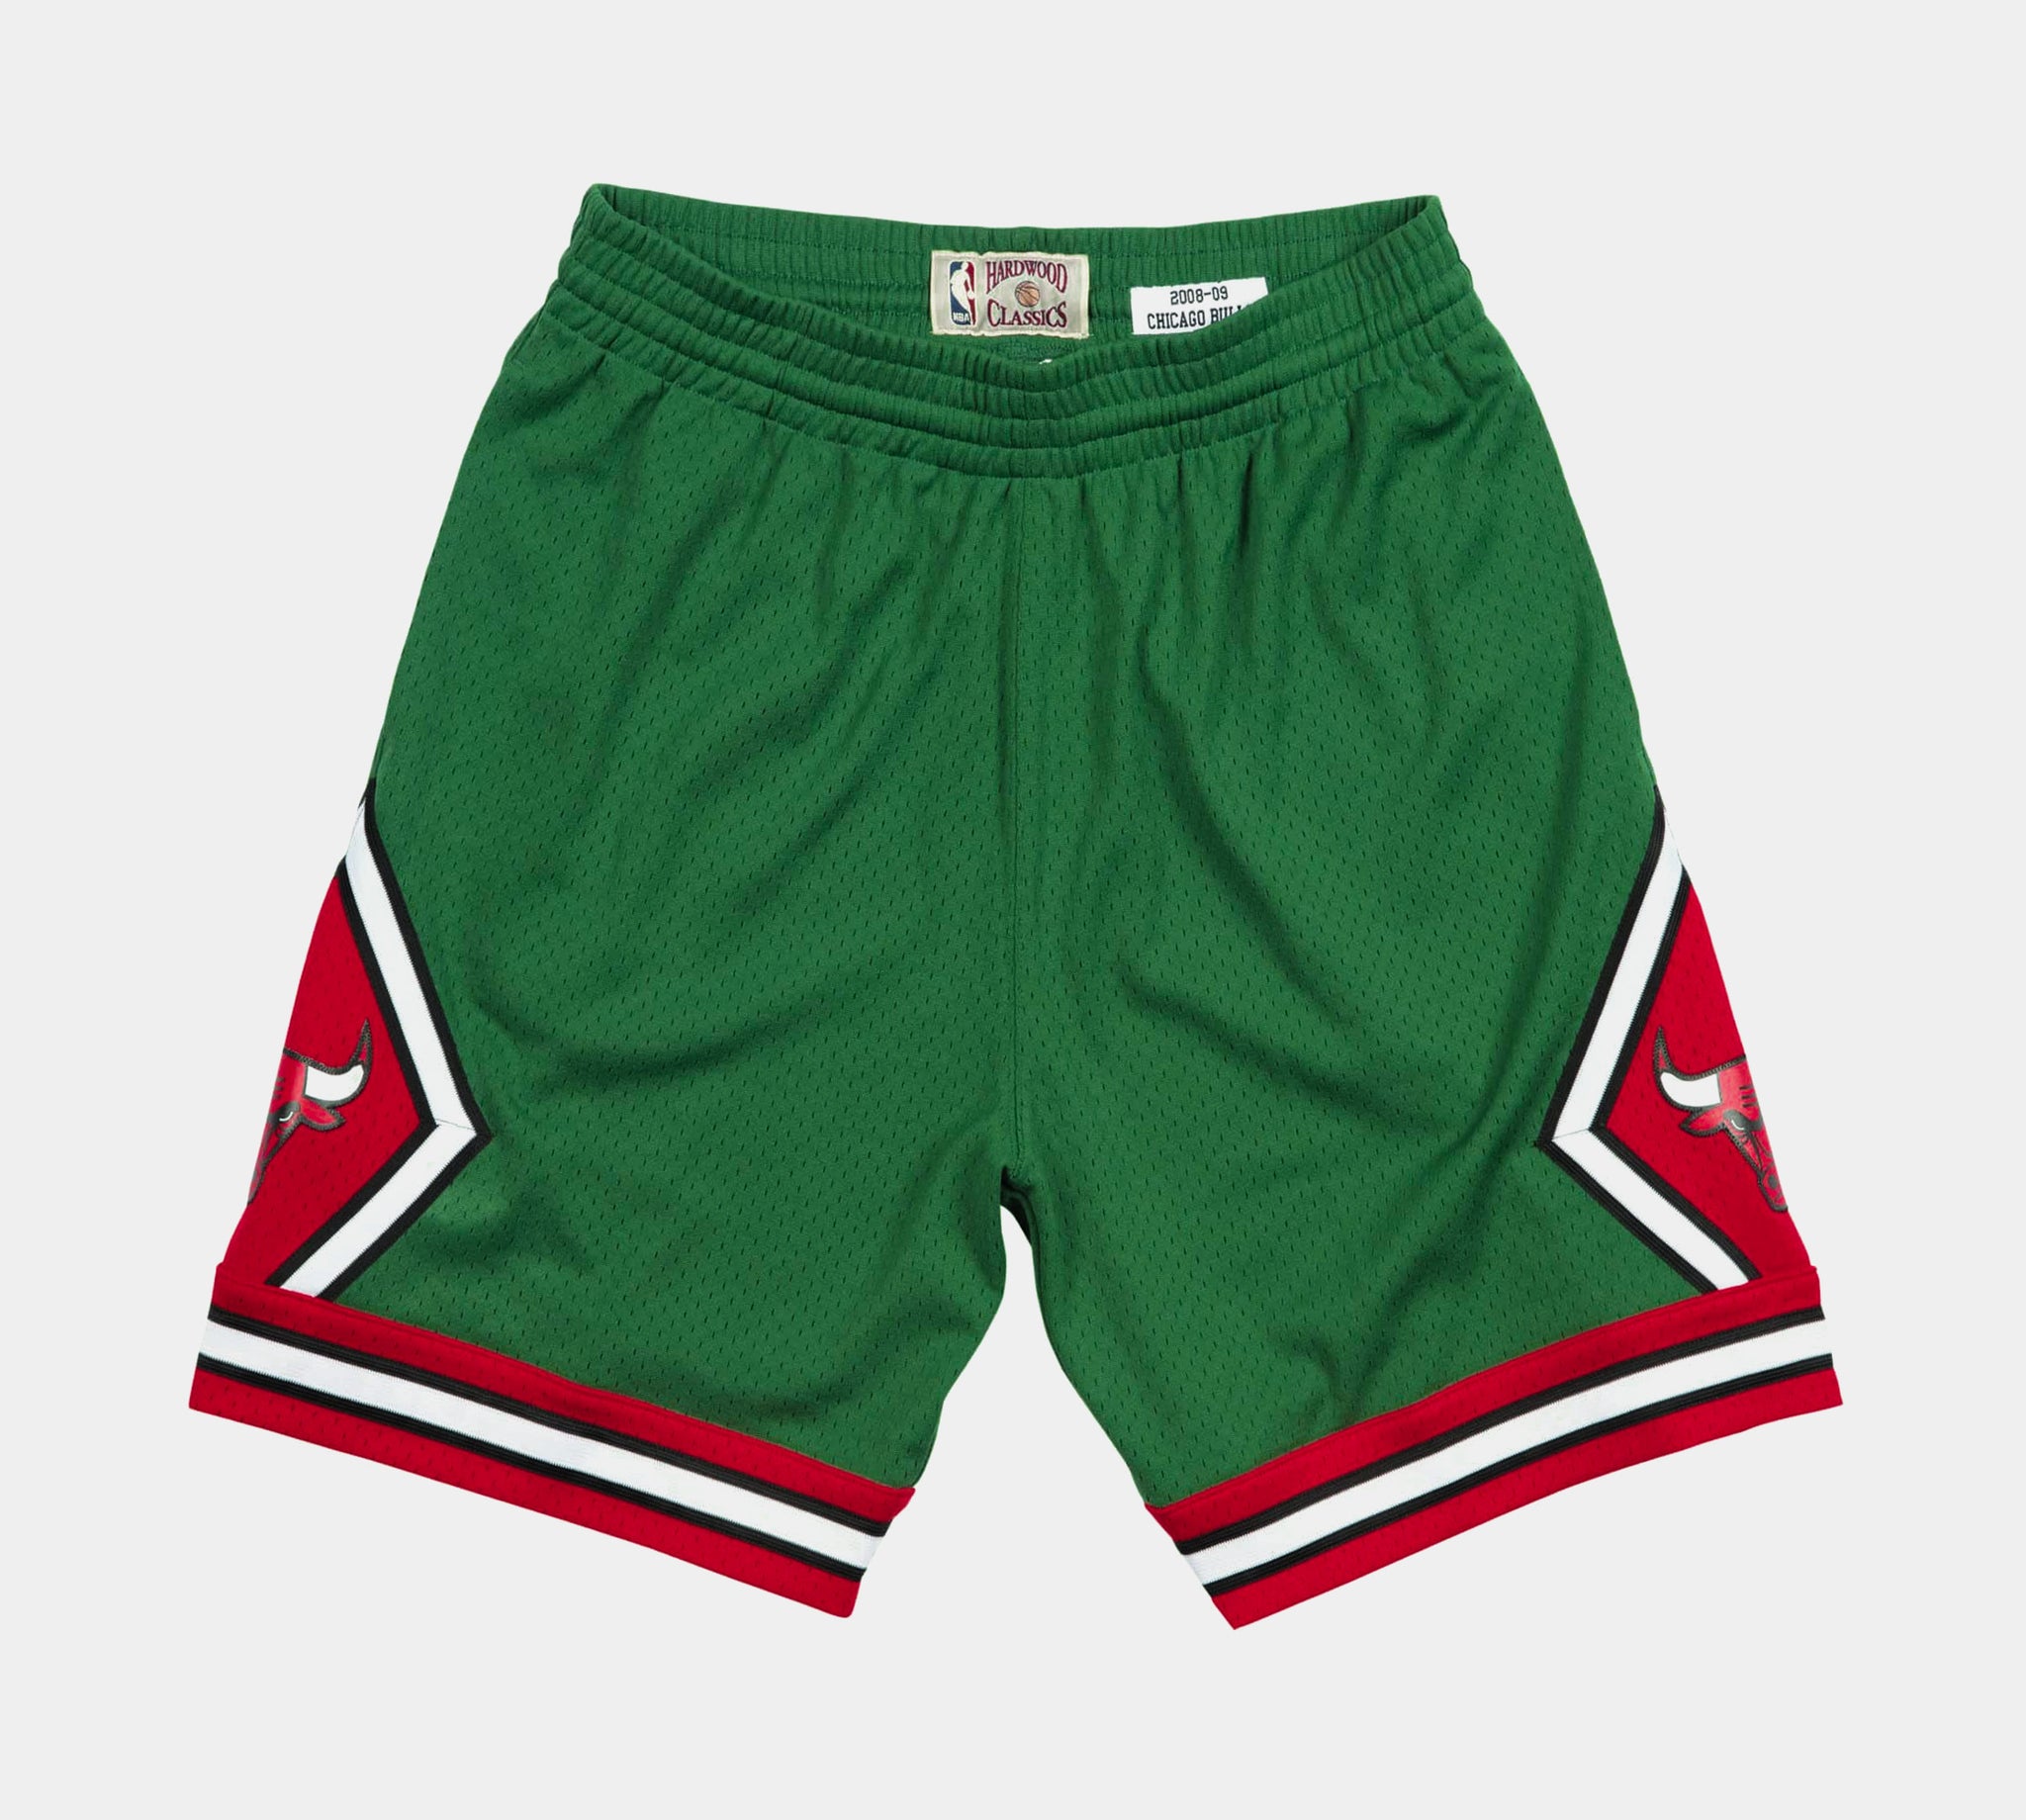 Mitchell & Ness Men's Chicago Bulls Tan Khaki Shorts